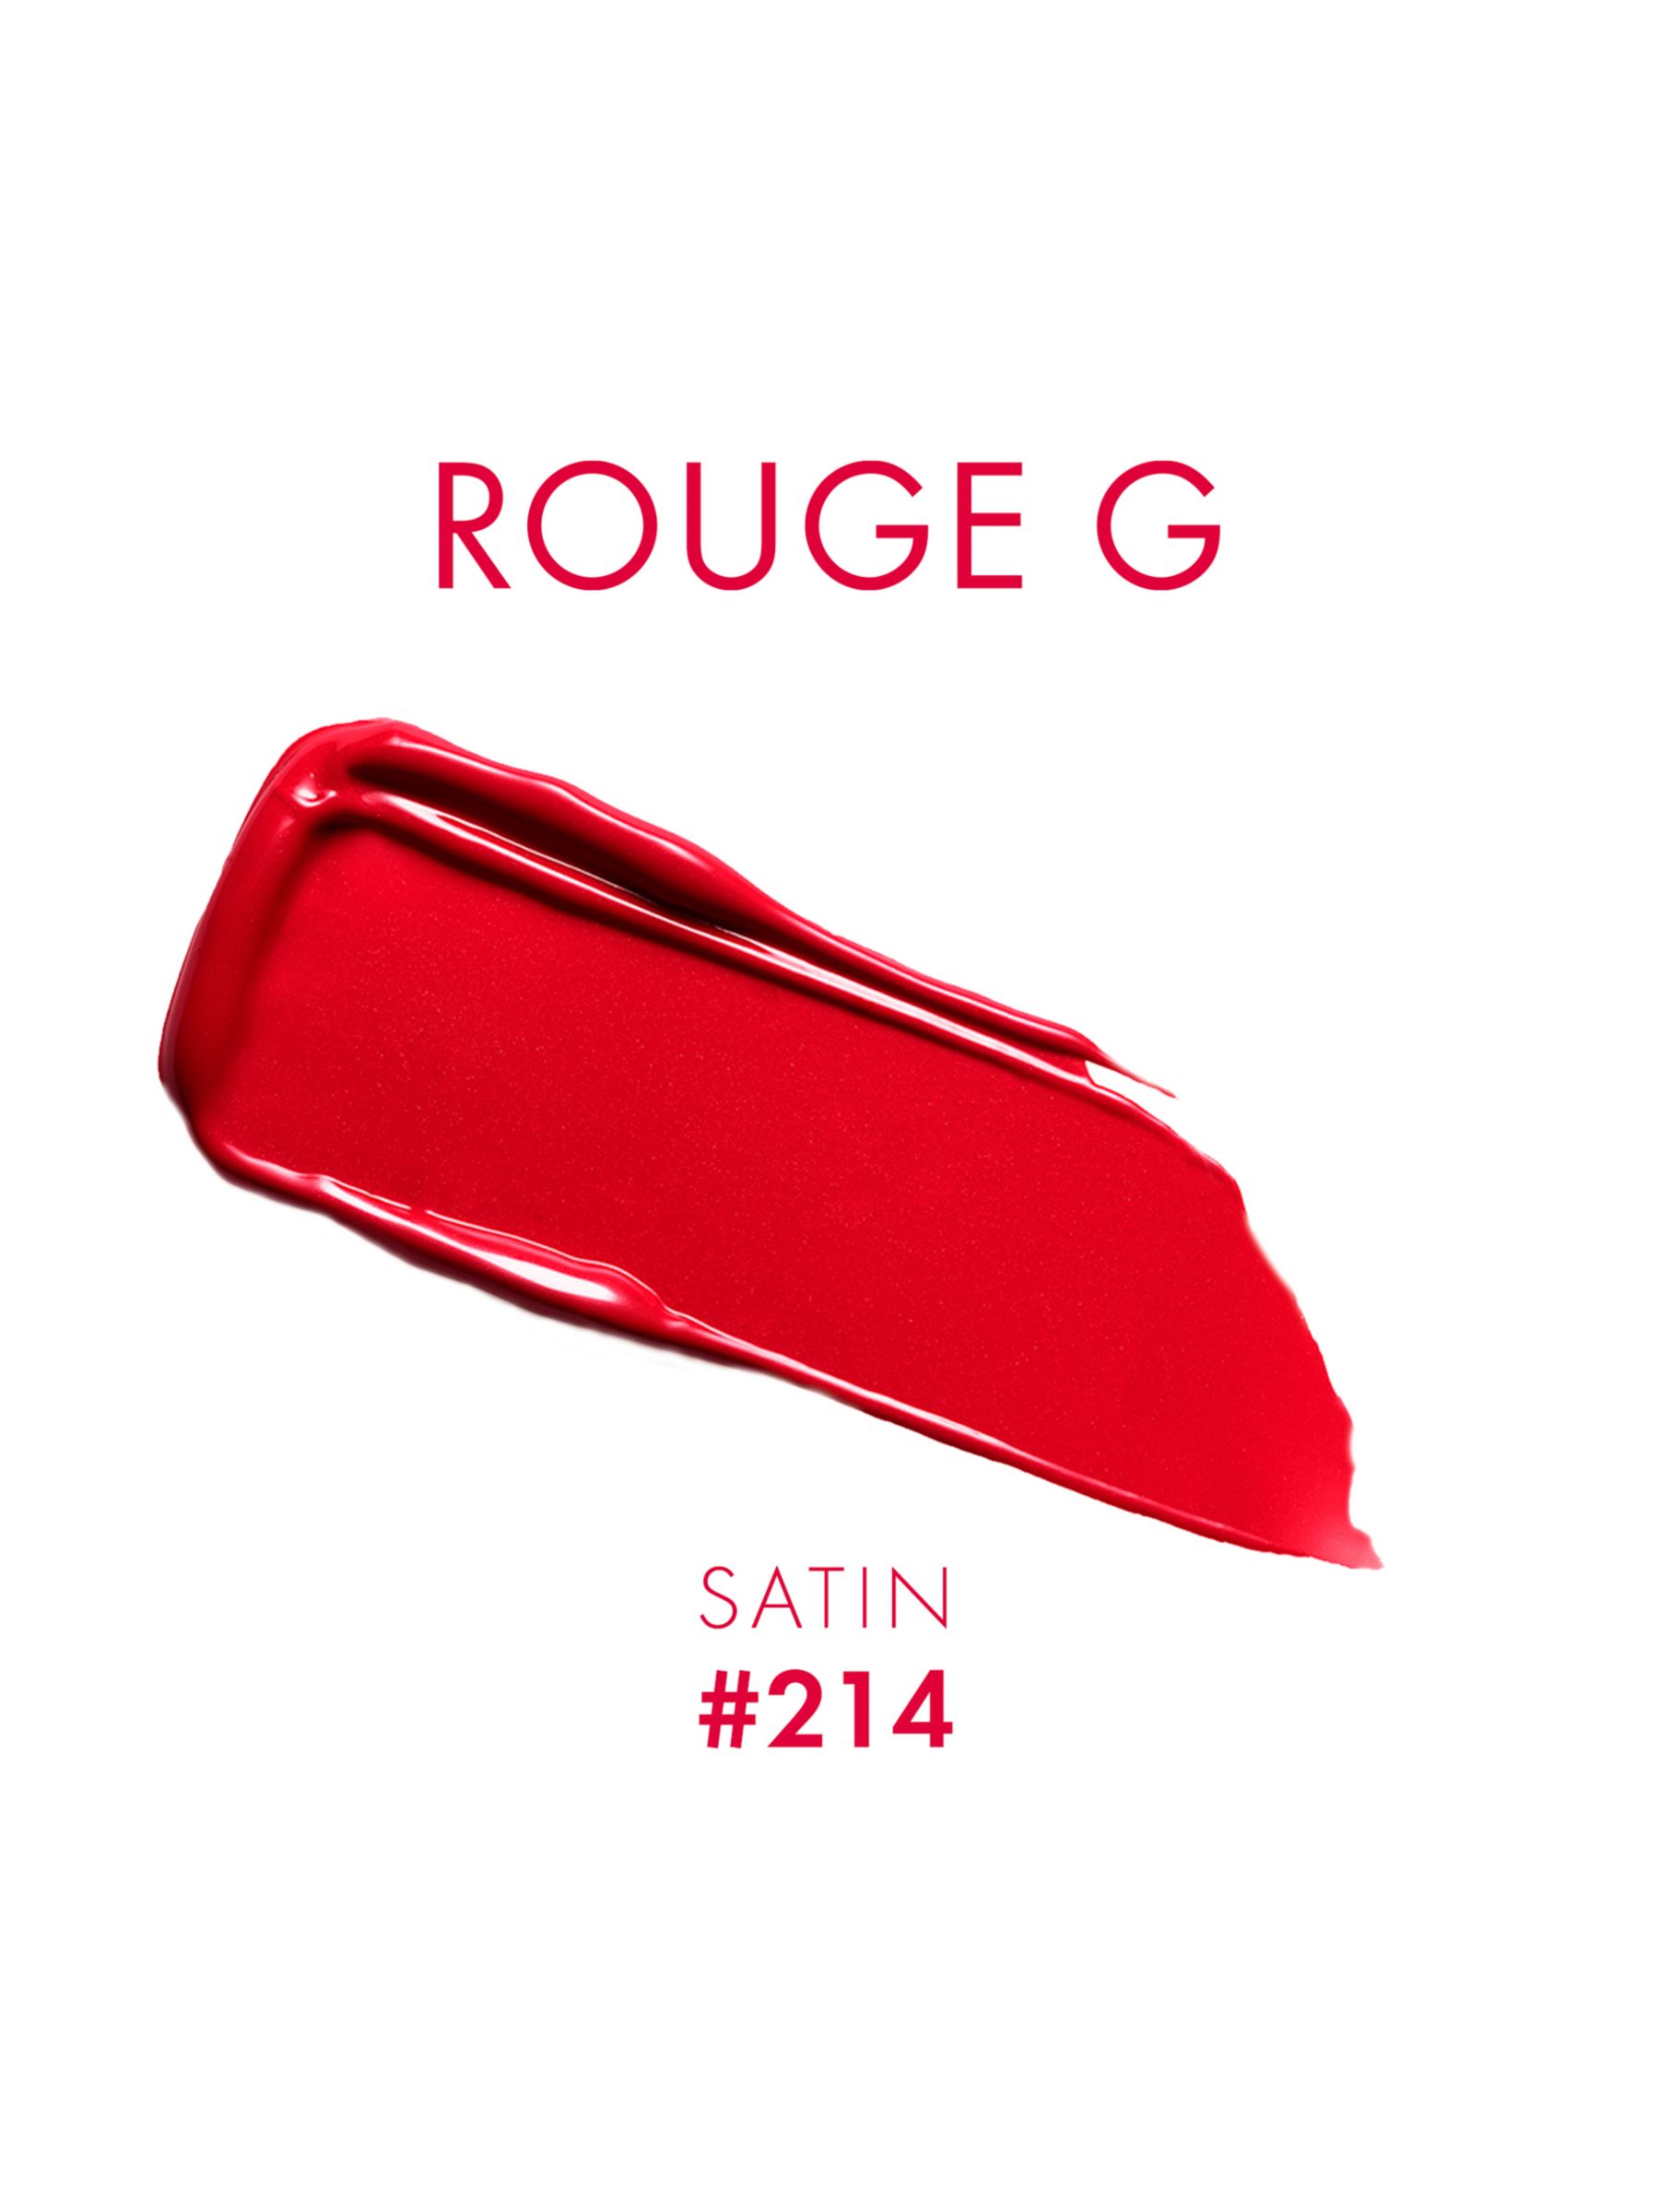 Guerlain Rouge G de Guerlain Satin Lipstick Refill, 214 Limited Edition 2